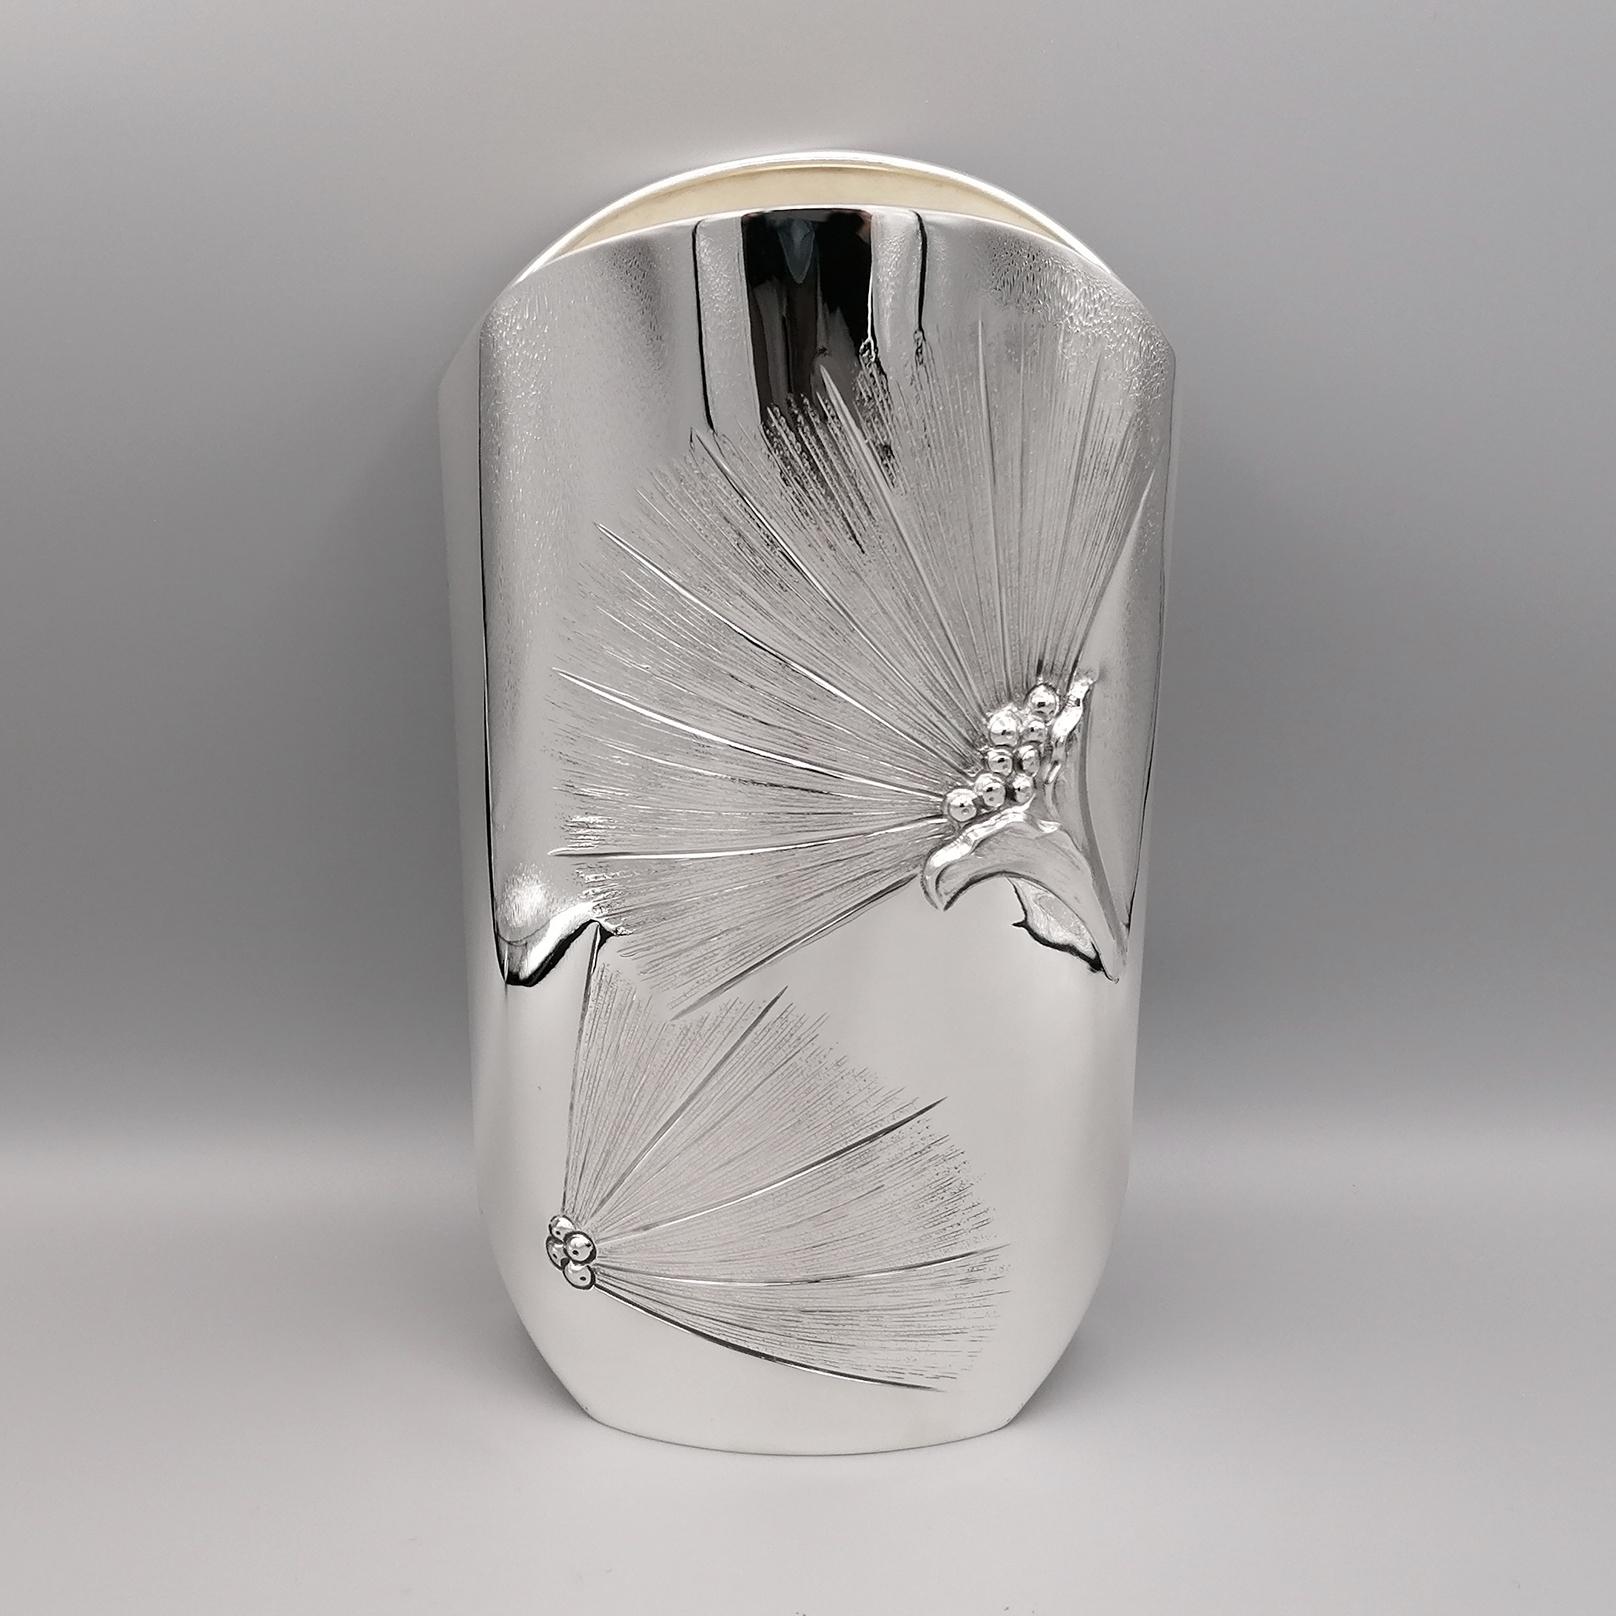 Vase aus 800 massivem Silber mit spitzer ovaler Form. 
Die Rückseite wurde völlig glatt gelassen, während die Vorderseite mit dem Muster der Sterlizia-Blüten geprägt und gemeißelt wurde. Vollständig handgefertigt von dem Silberschmiedemeister